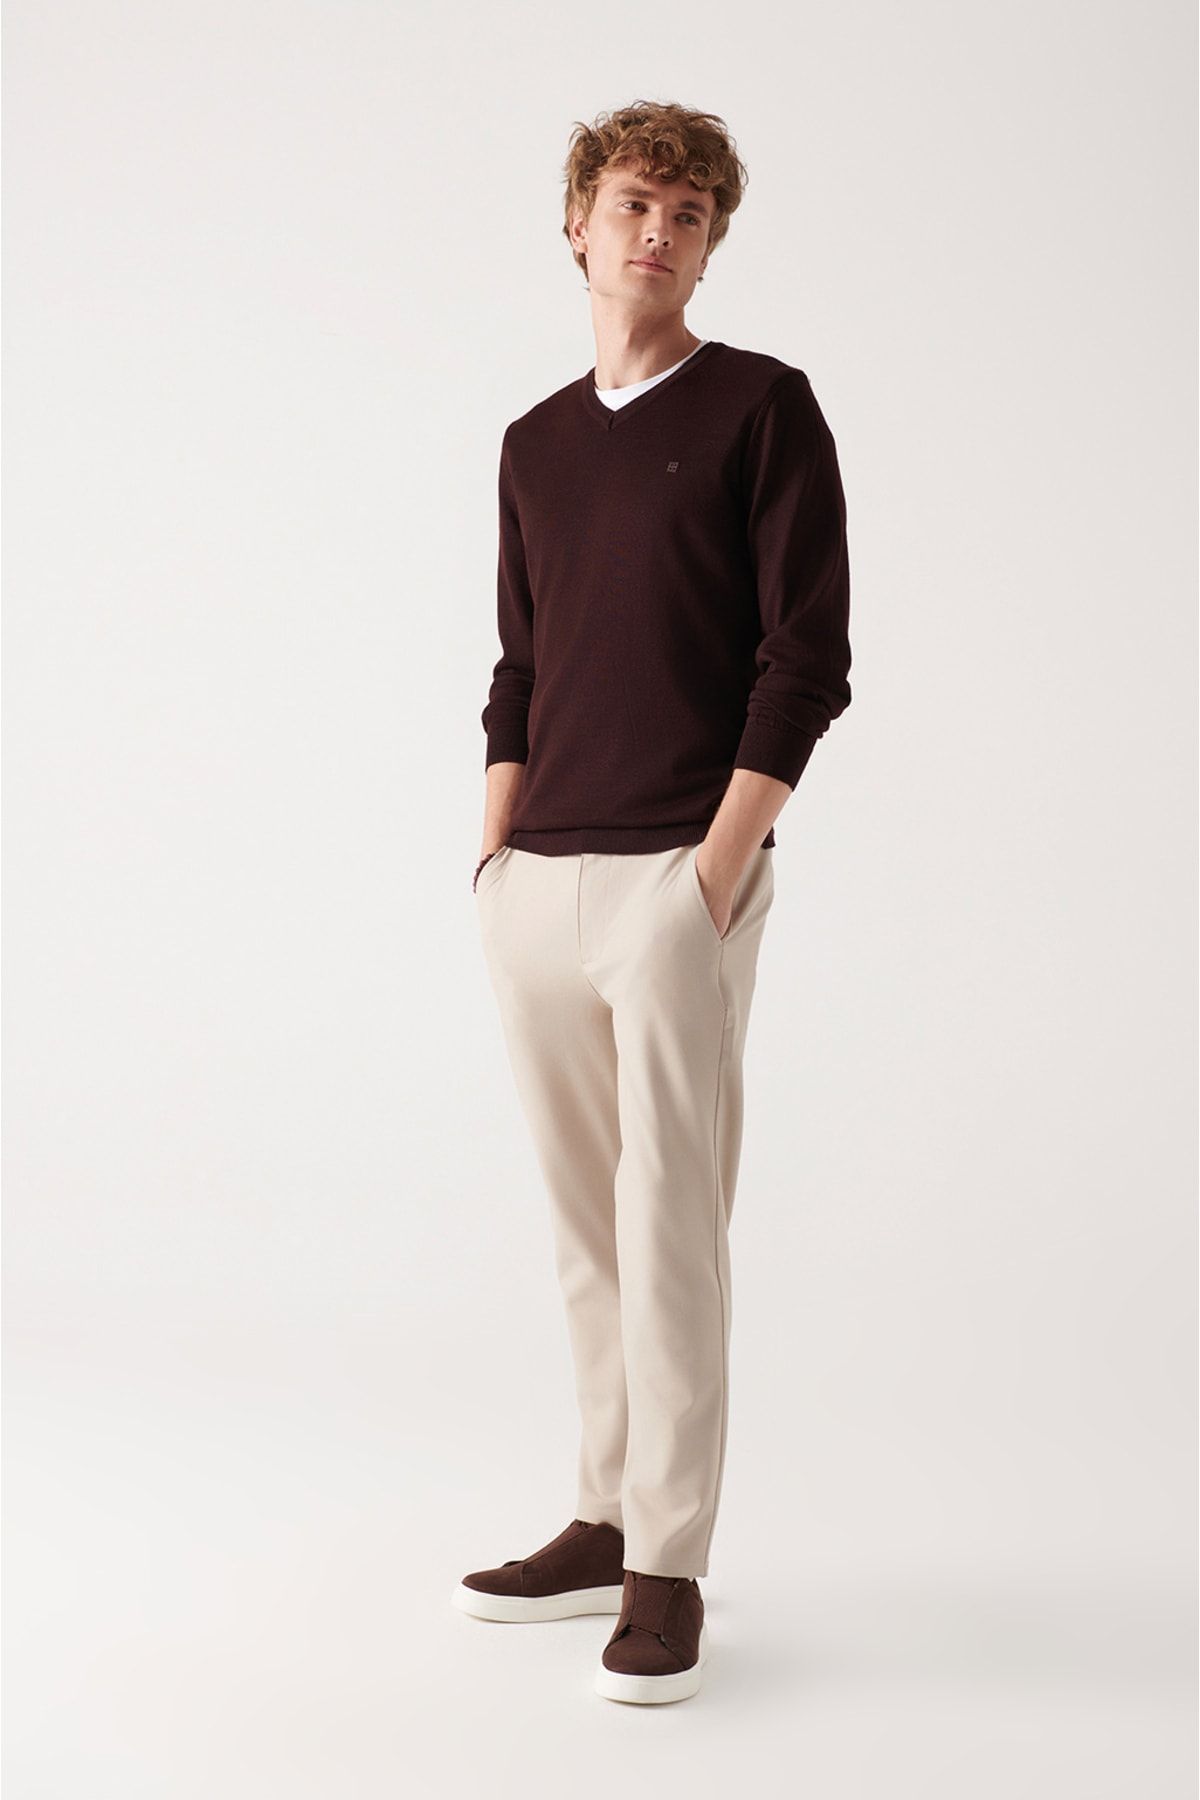 شلوار پارچه ای کرمی جیب دار زیپ دار دکمه ای مدل راسته مردانه آوا Avva (برند ترکیه)